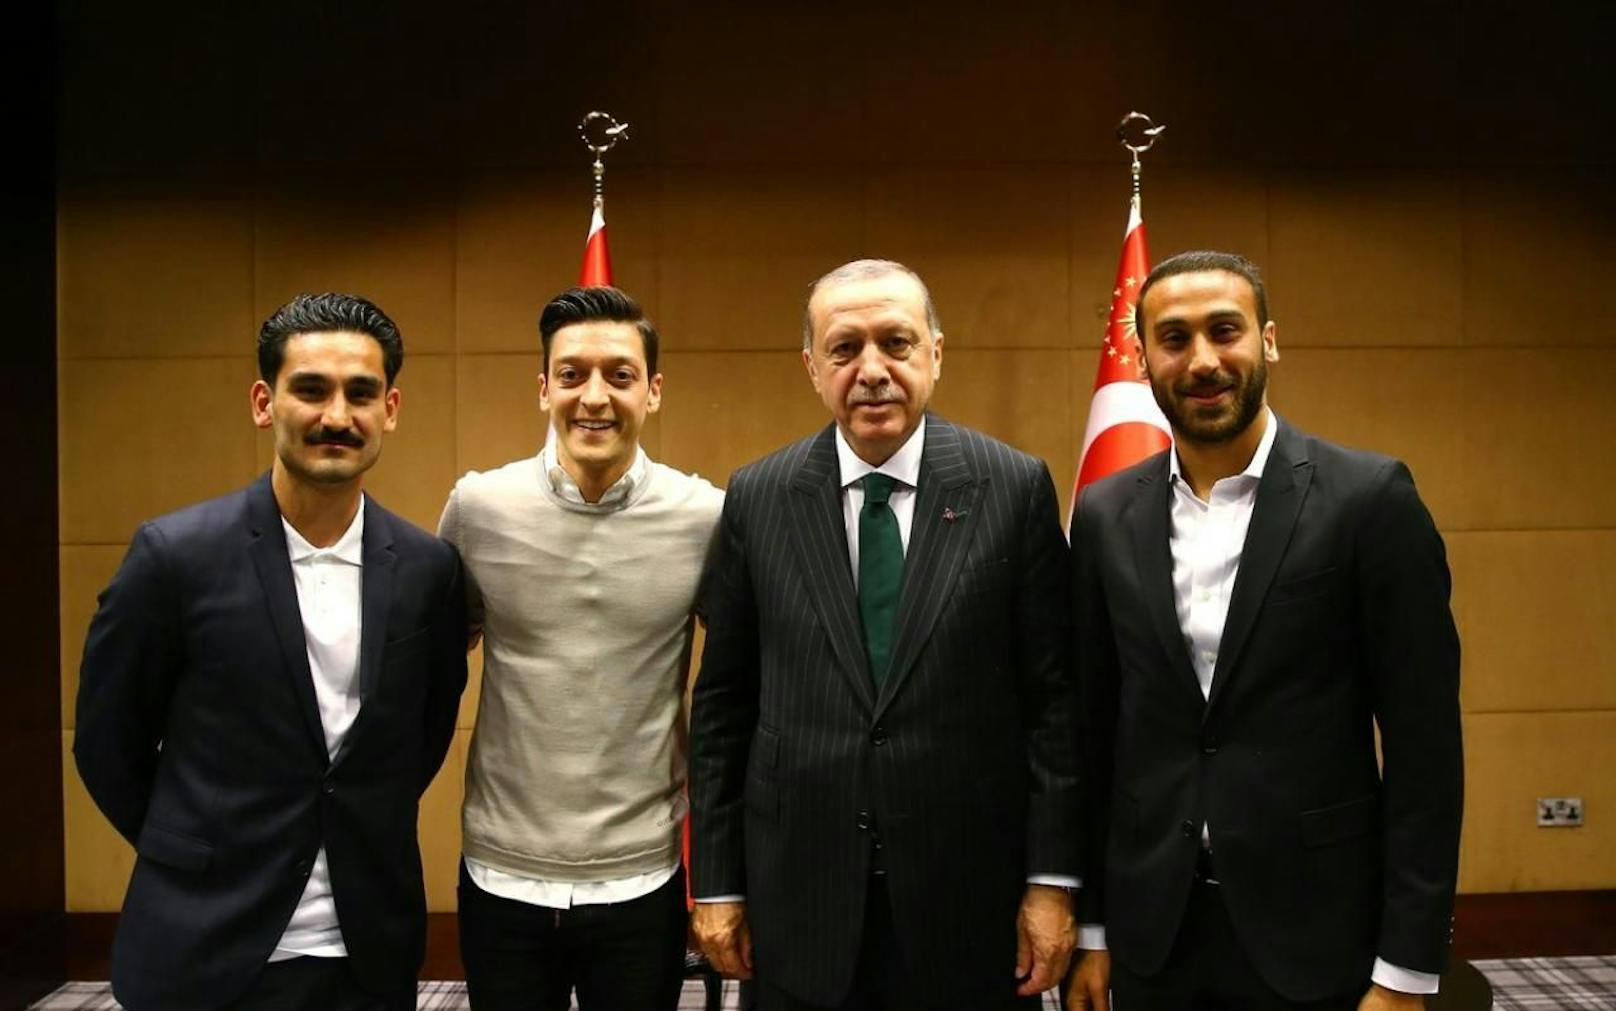 Posieren in London mit dem türkischen Staatspräsidenten Recep Tayyip Erdogan: So sorgen die Fußballer Cenk Tosun (r.), Mesut Özil (2.v.l.) und Ilkay Gündogan (l.) für Gesprächsstoff.
Twitter/AK Parti